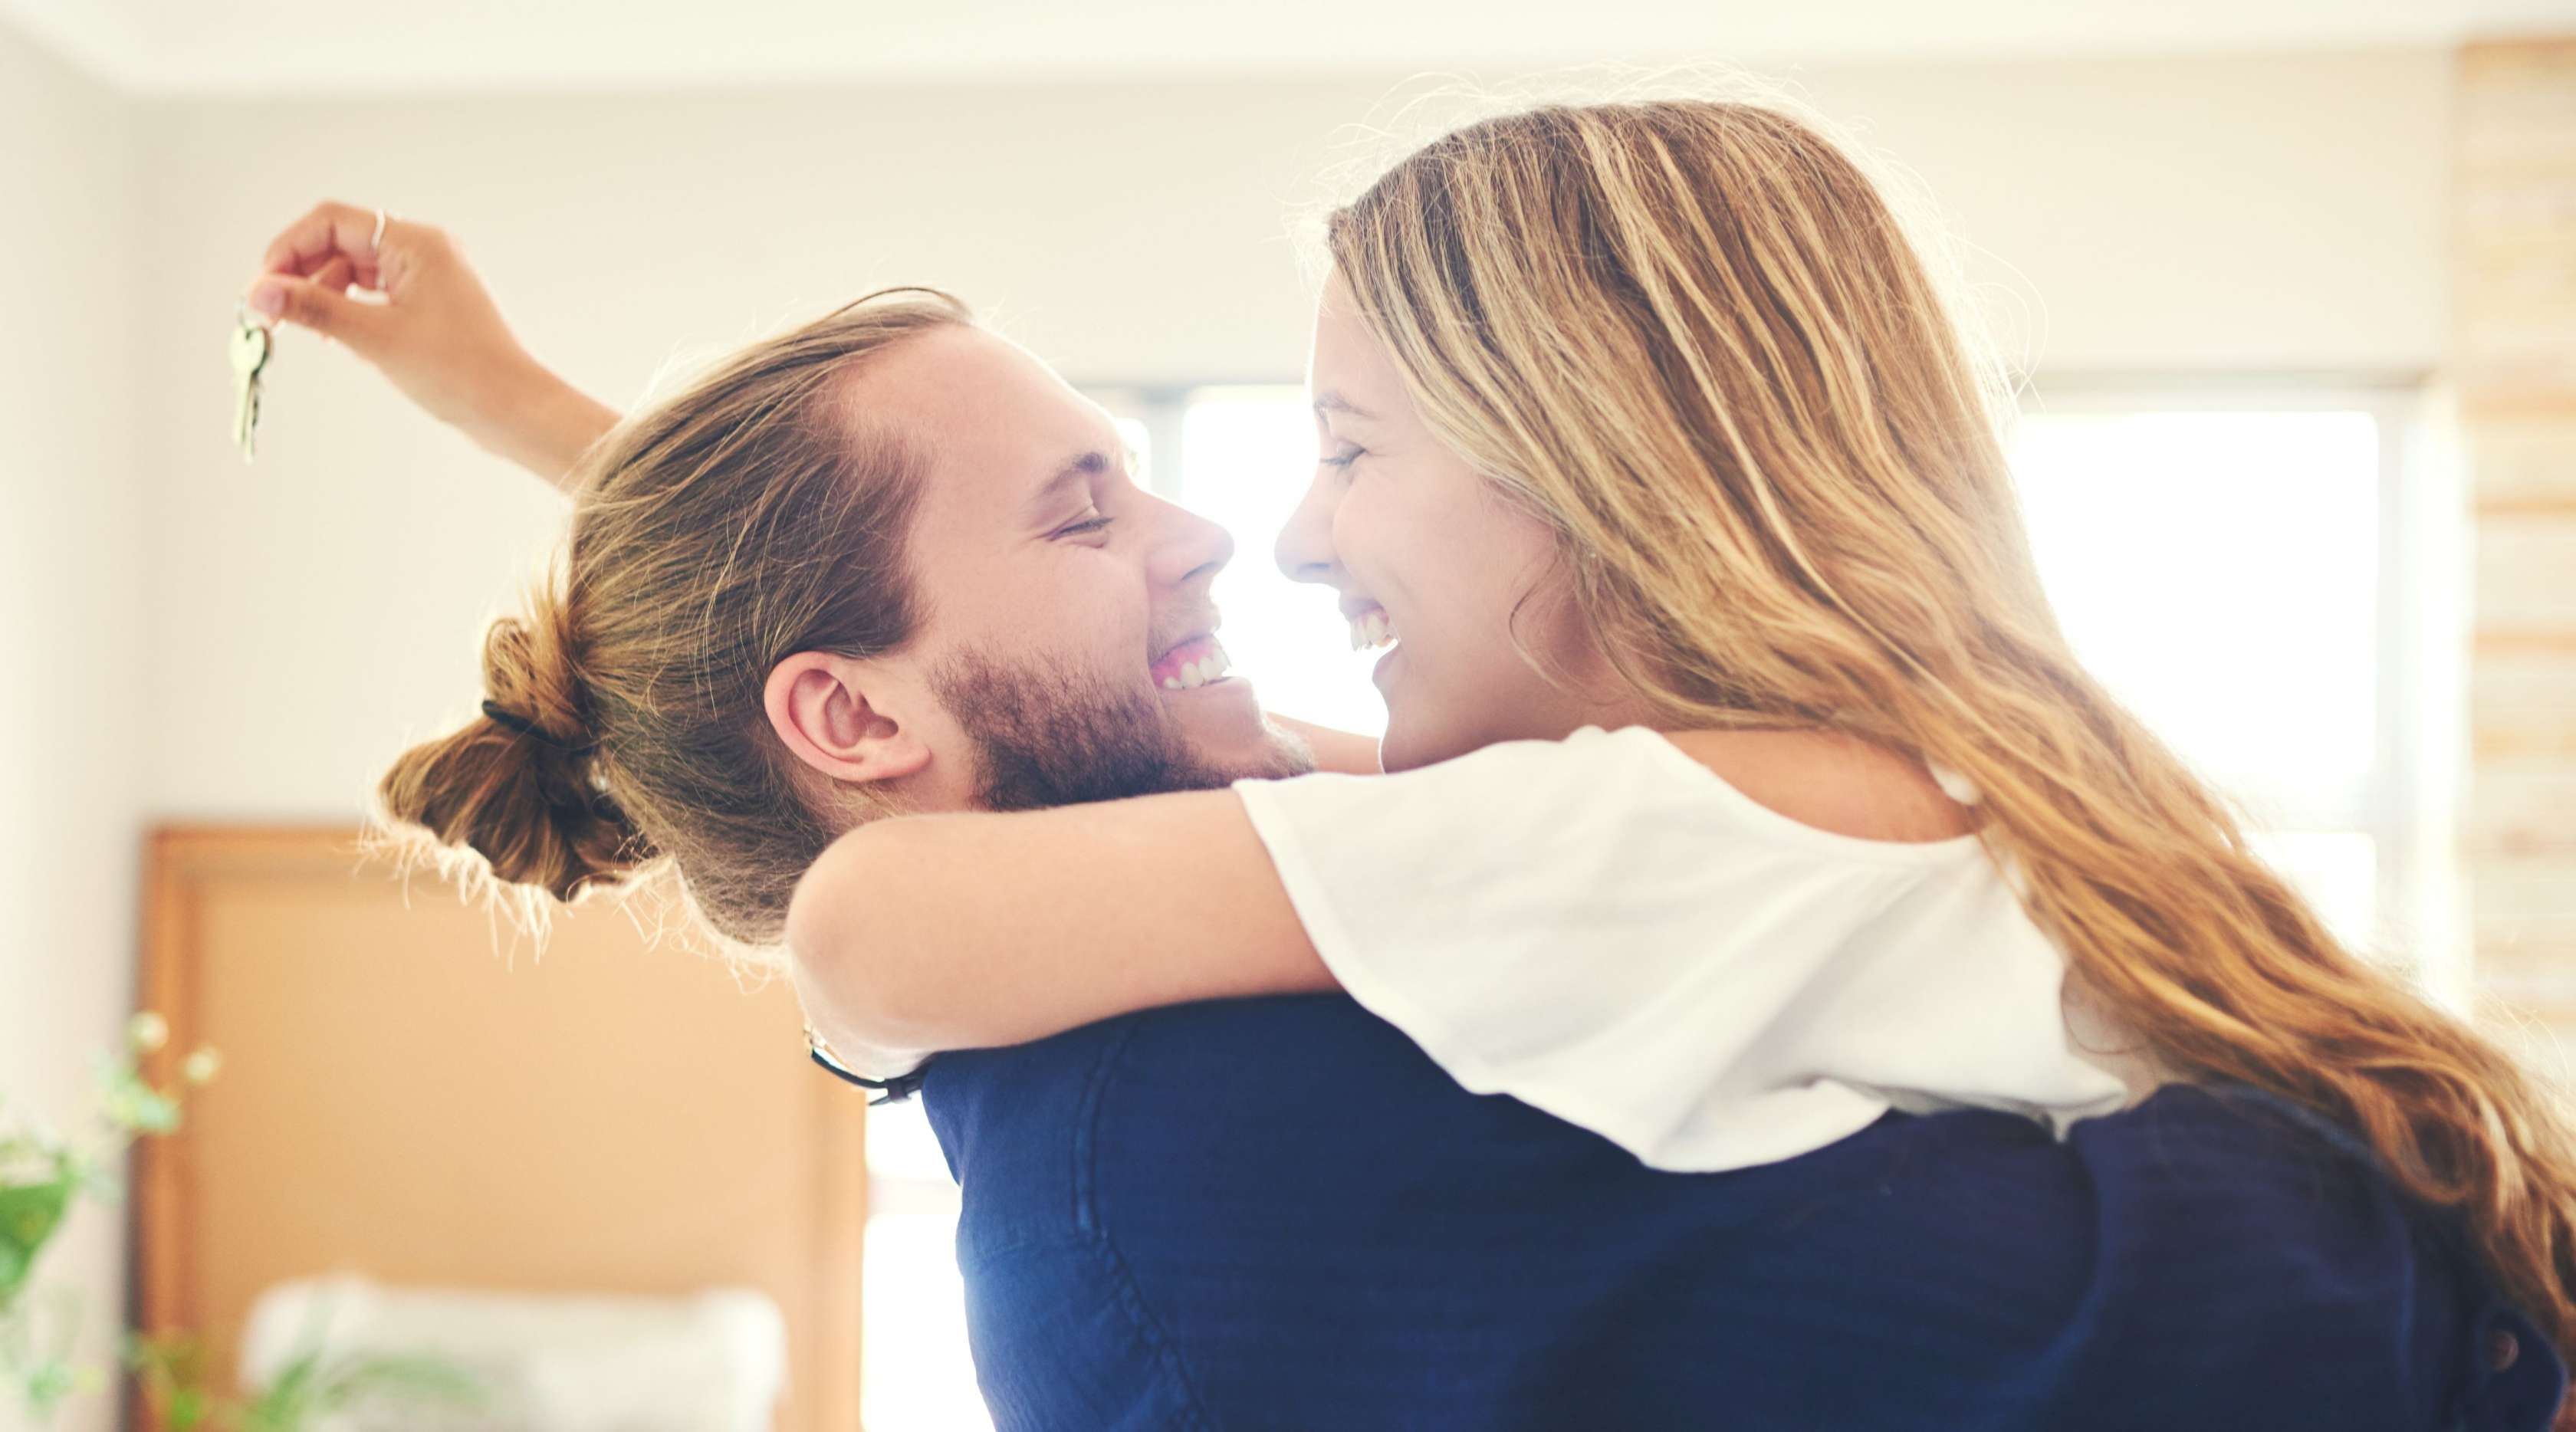 Ein junges Paar hält sich im Arm und lächelt sich fröhlich an. Im Hintergrund sieht man ihr neues Haus, sie hält den neuen Hausschlüssel in der Hand.